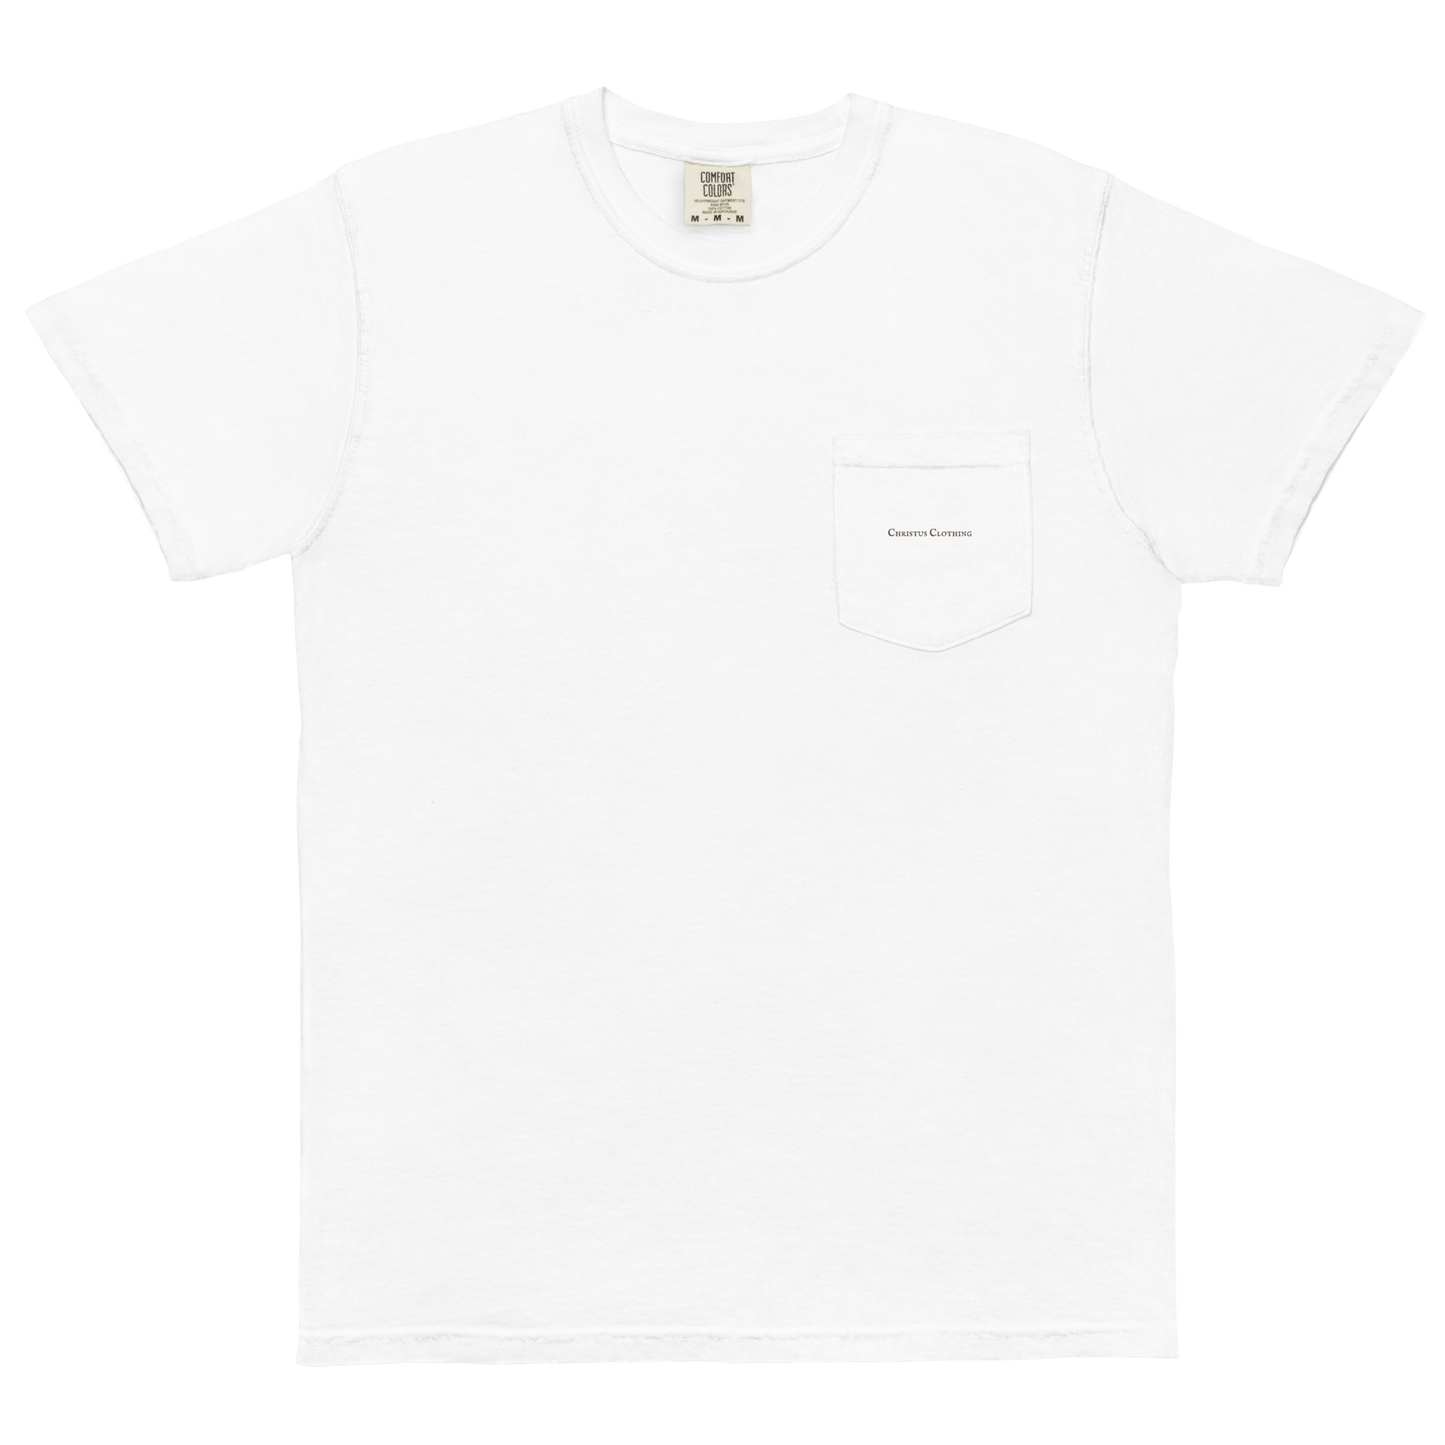 Eternal Life Skull Unisex garment-dyed pocket t-shirt